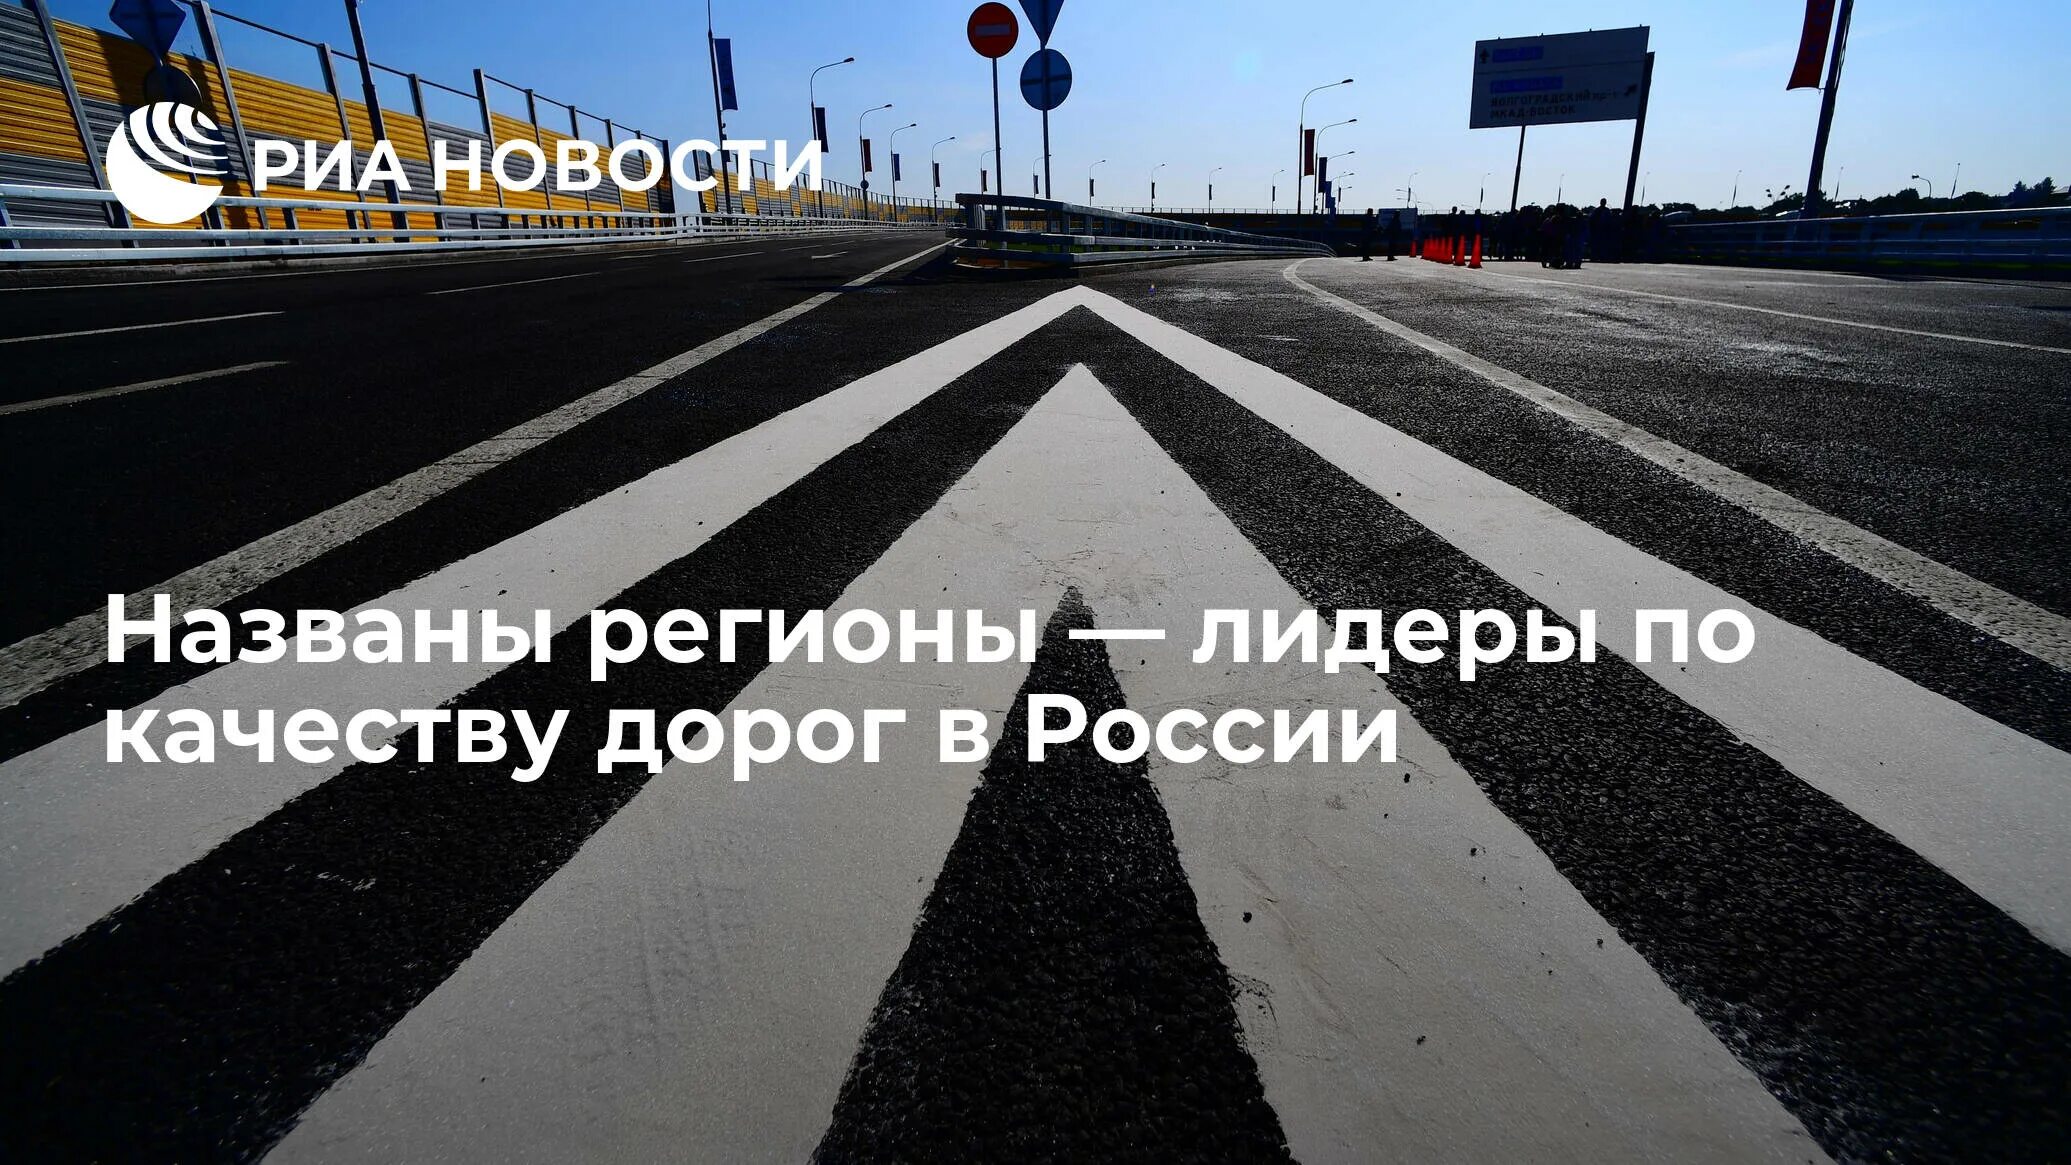 Качество дорог. Самая лучшая дорога в России. Москва дорога. Лучшие дороги в мире. Загруженность дороги в определенное время